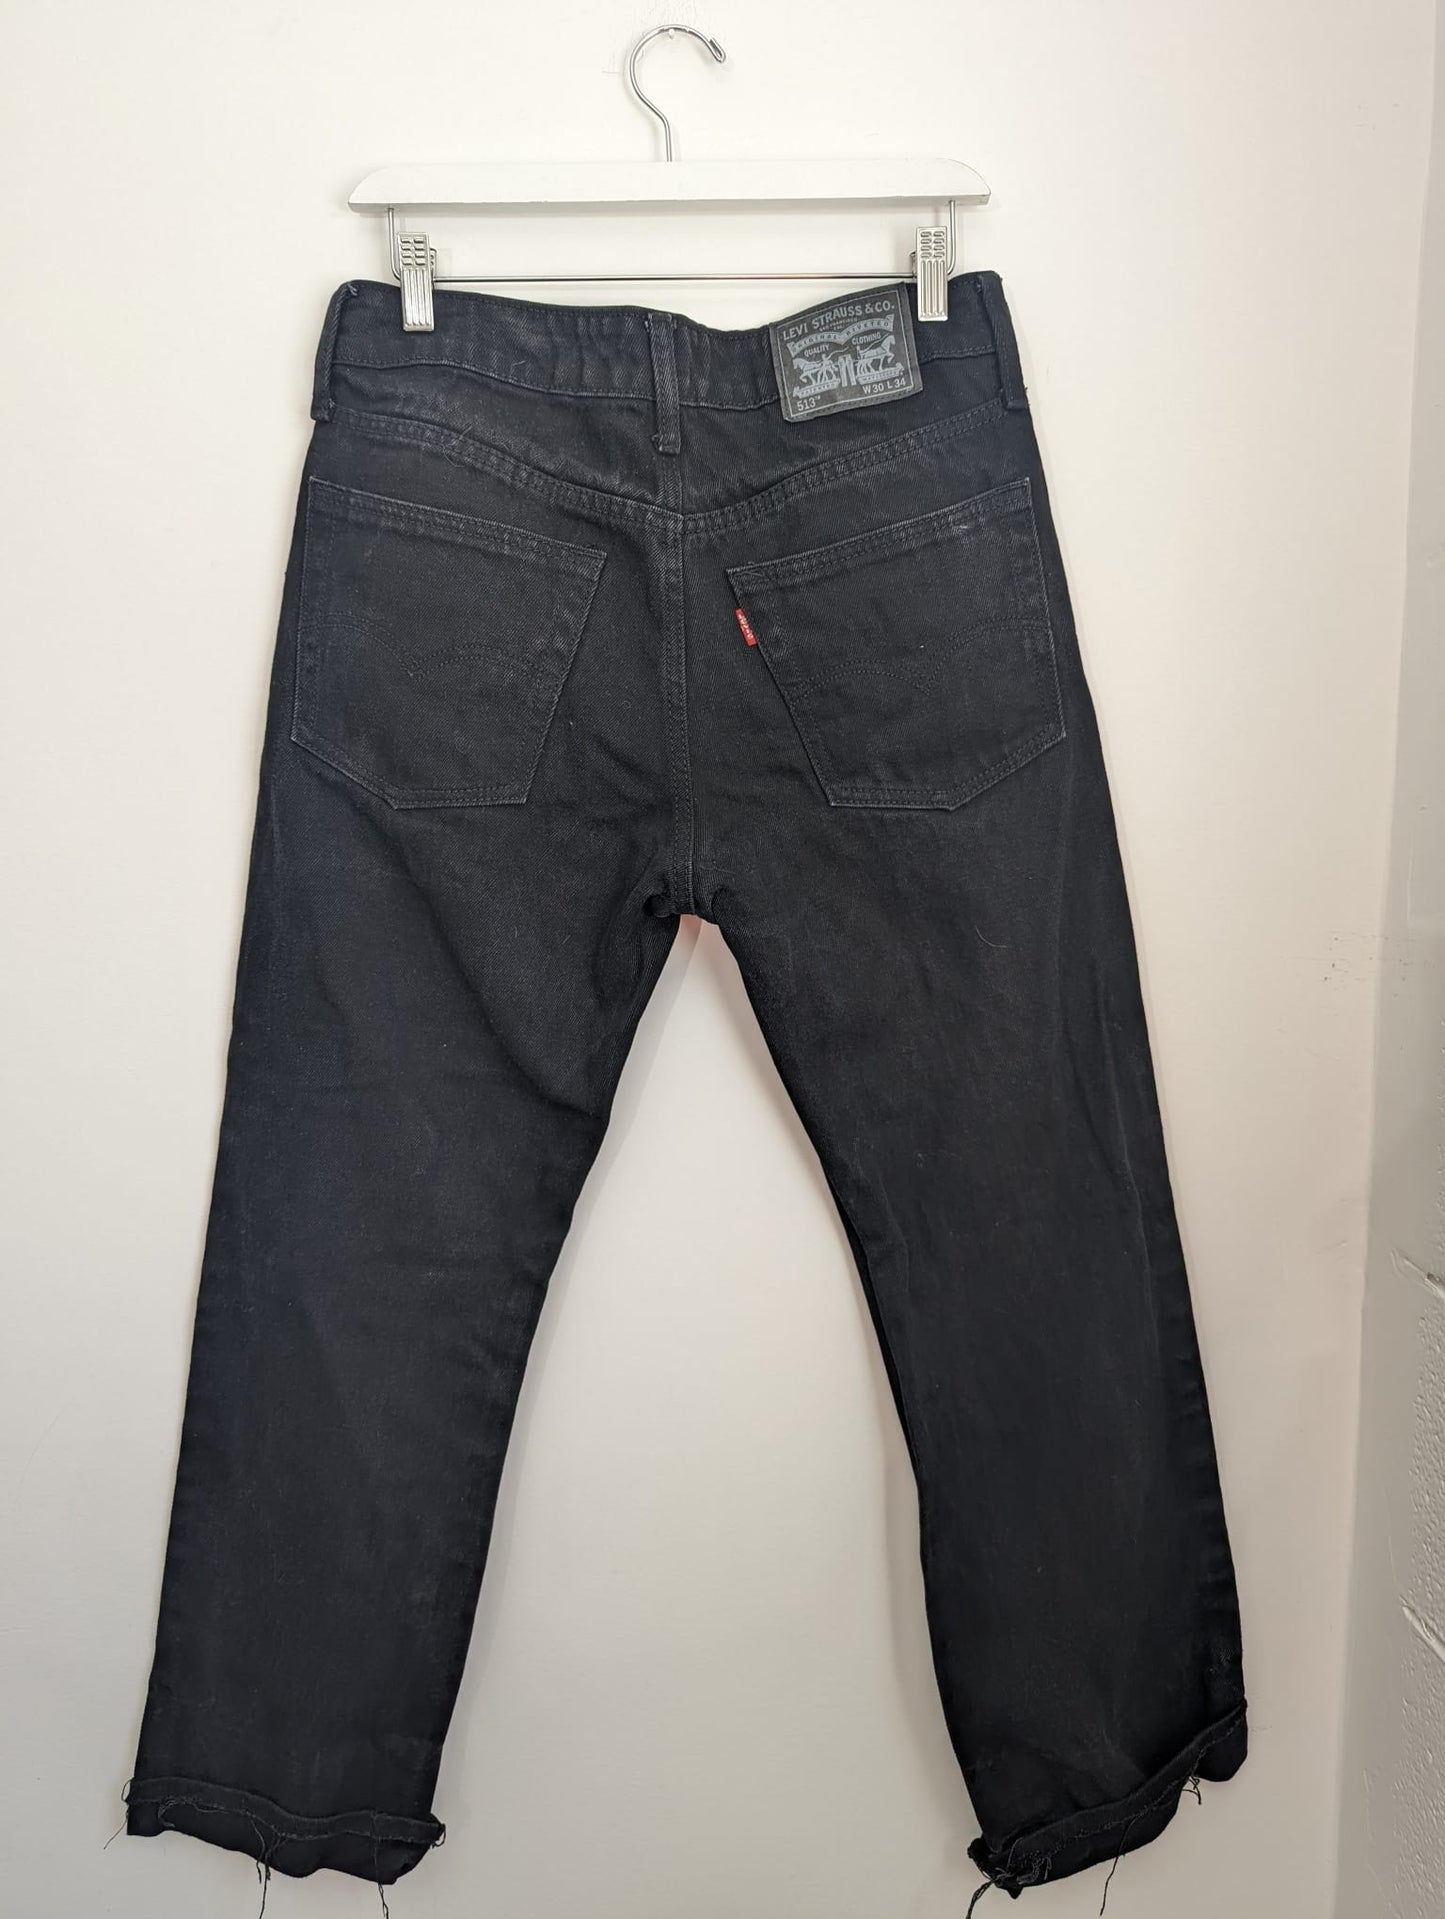 Levi's Black 513 Jeans - Size 30